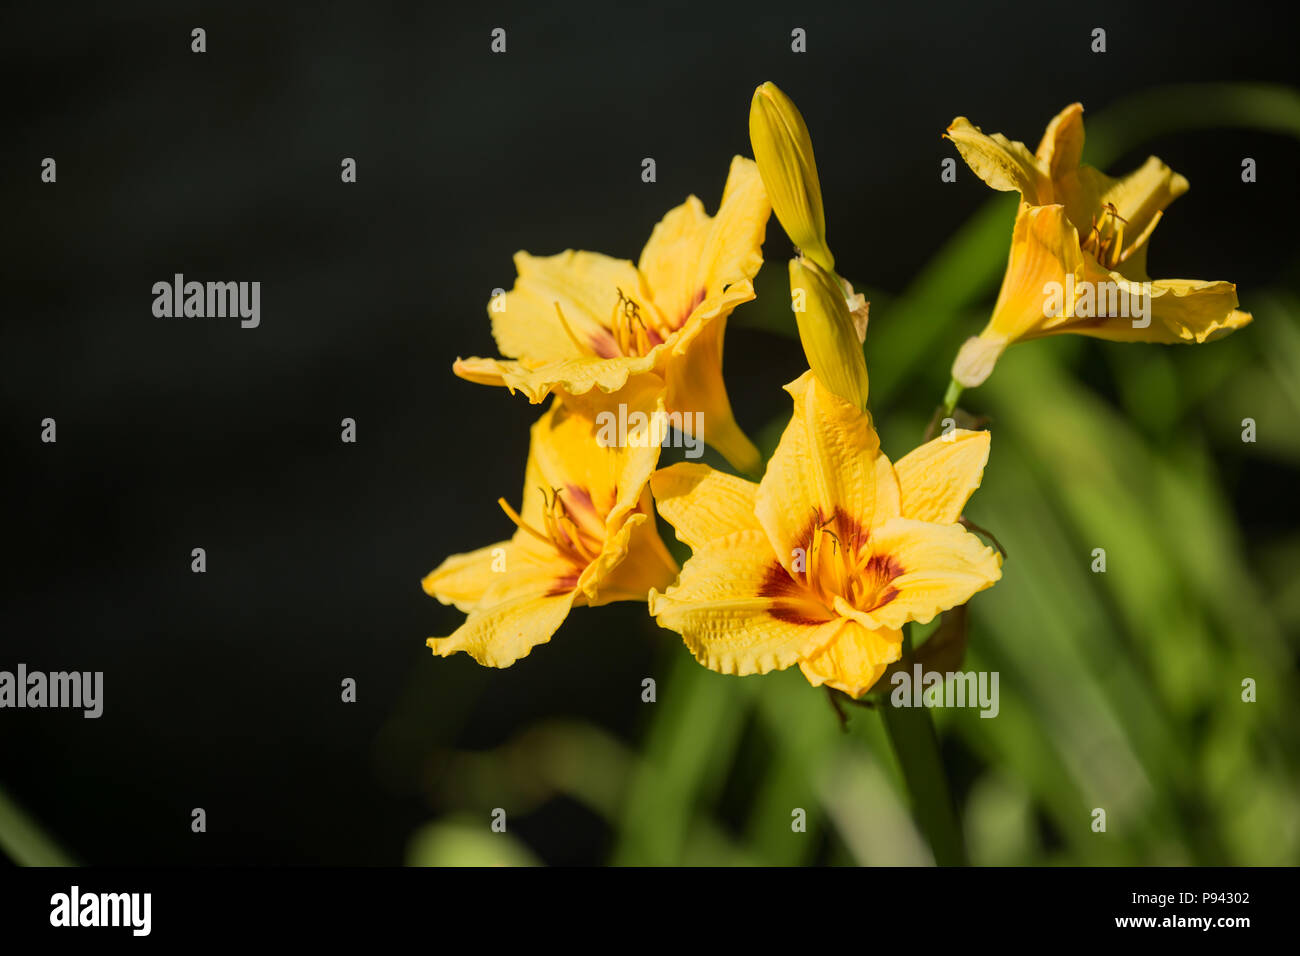 Beautiful flowers of yellow hybrid daylily hemerocallis closeup Stock Photo